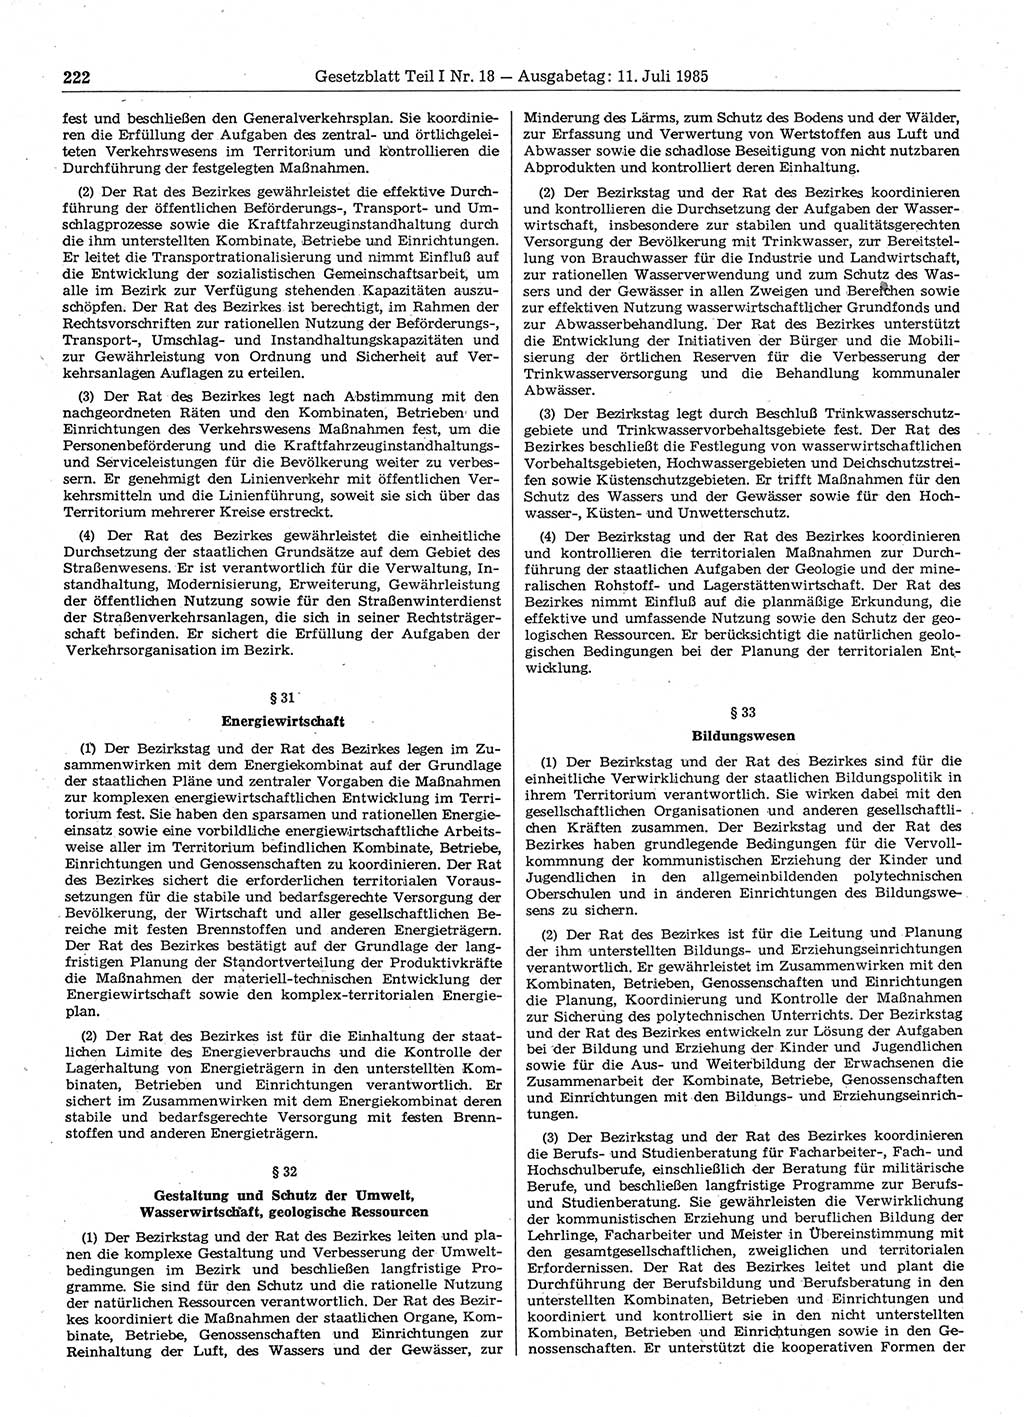 Gesetzblatt (GBl.) der Deutschen Demokratischen Republik (DDR) Teil Ⅰ 1985, Seite 222 (GBl. DDR Ⅰ 1985, S. 222)